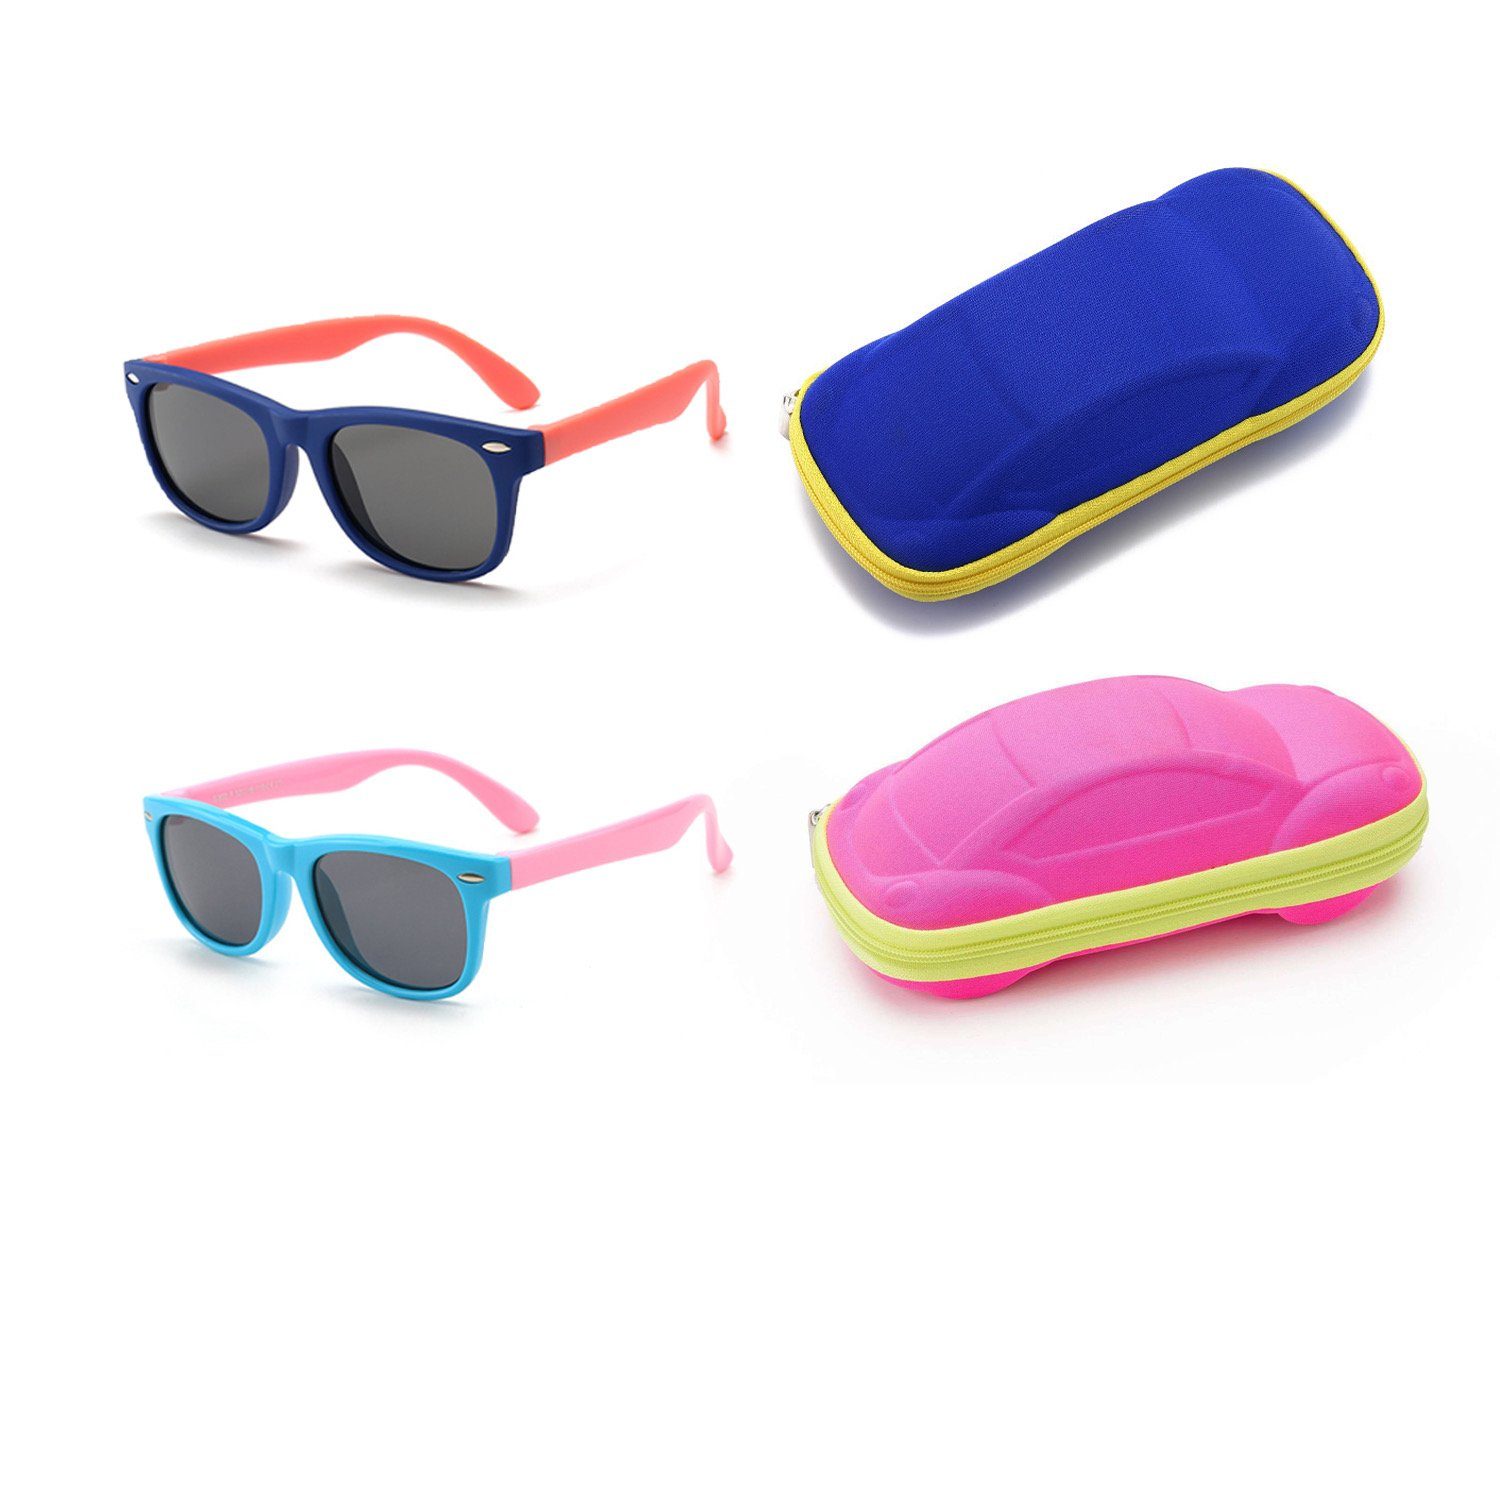 Olotos Sonnenbrille Sonnenbrille für Kinder Mädchen Jungen Gummi 100% UV400 Schutz Brille Hellblau+Dunkelblau mit Brillenetui